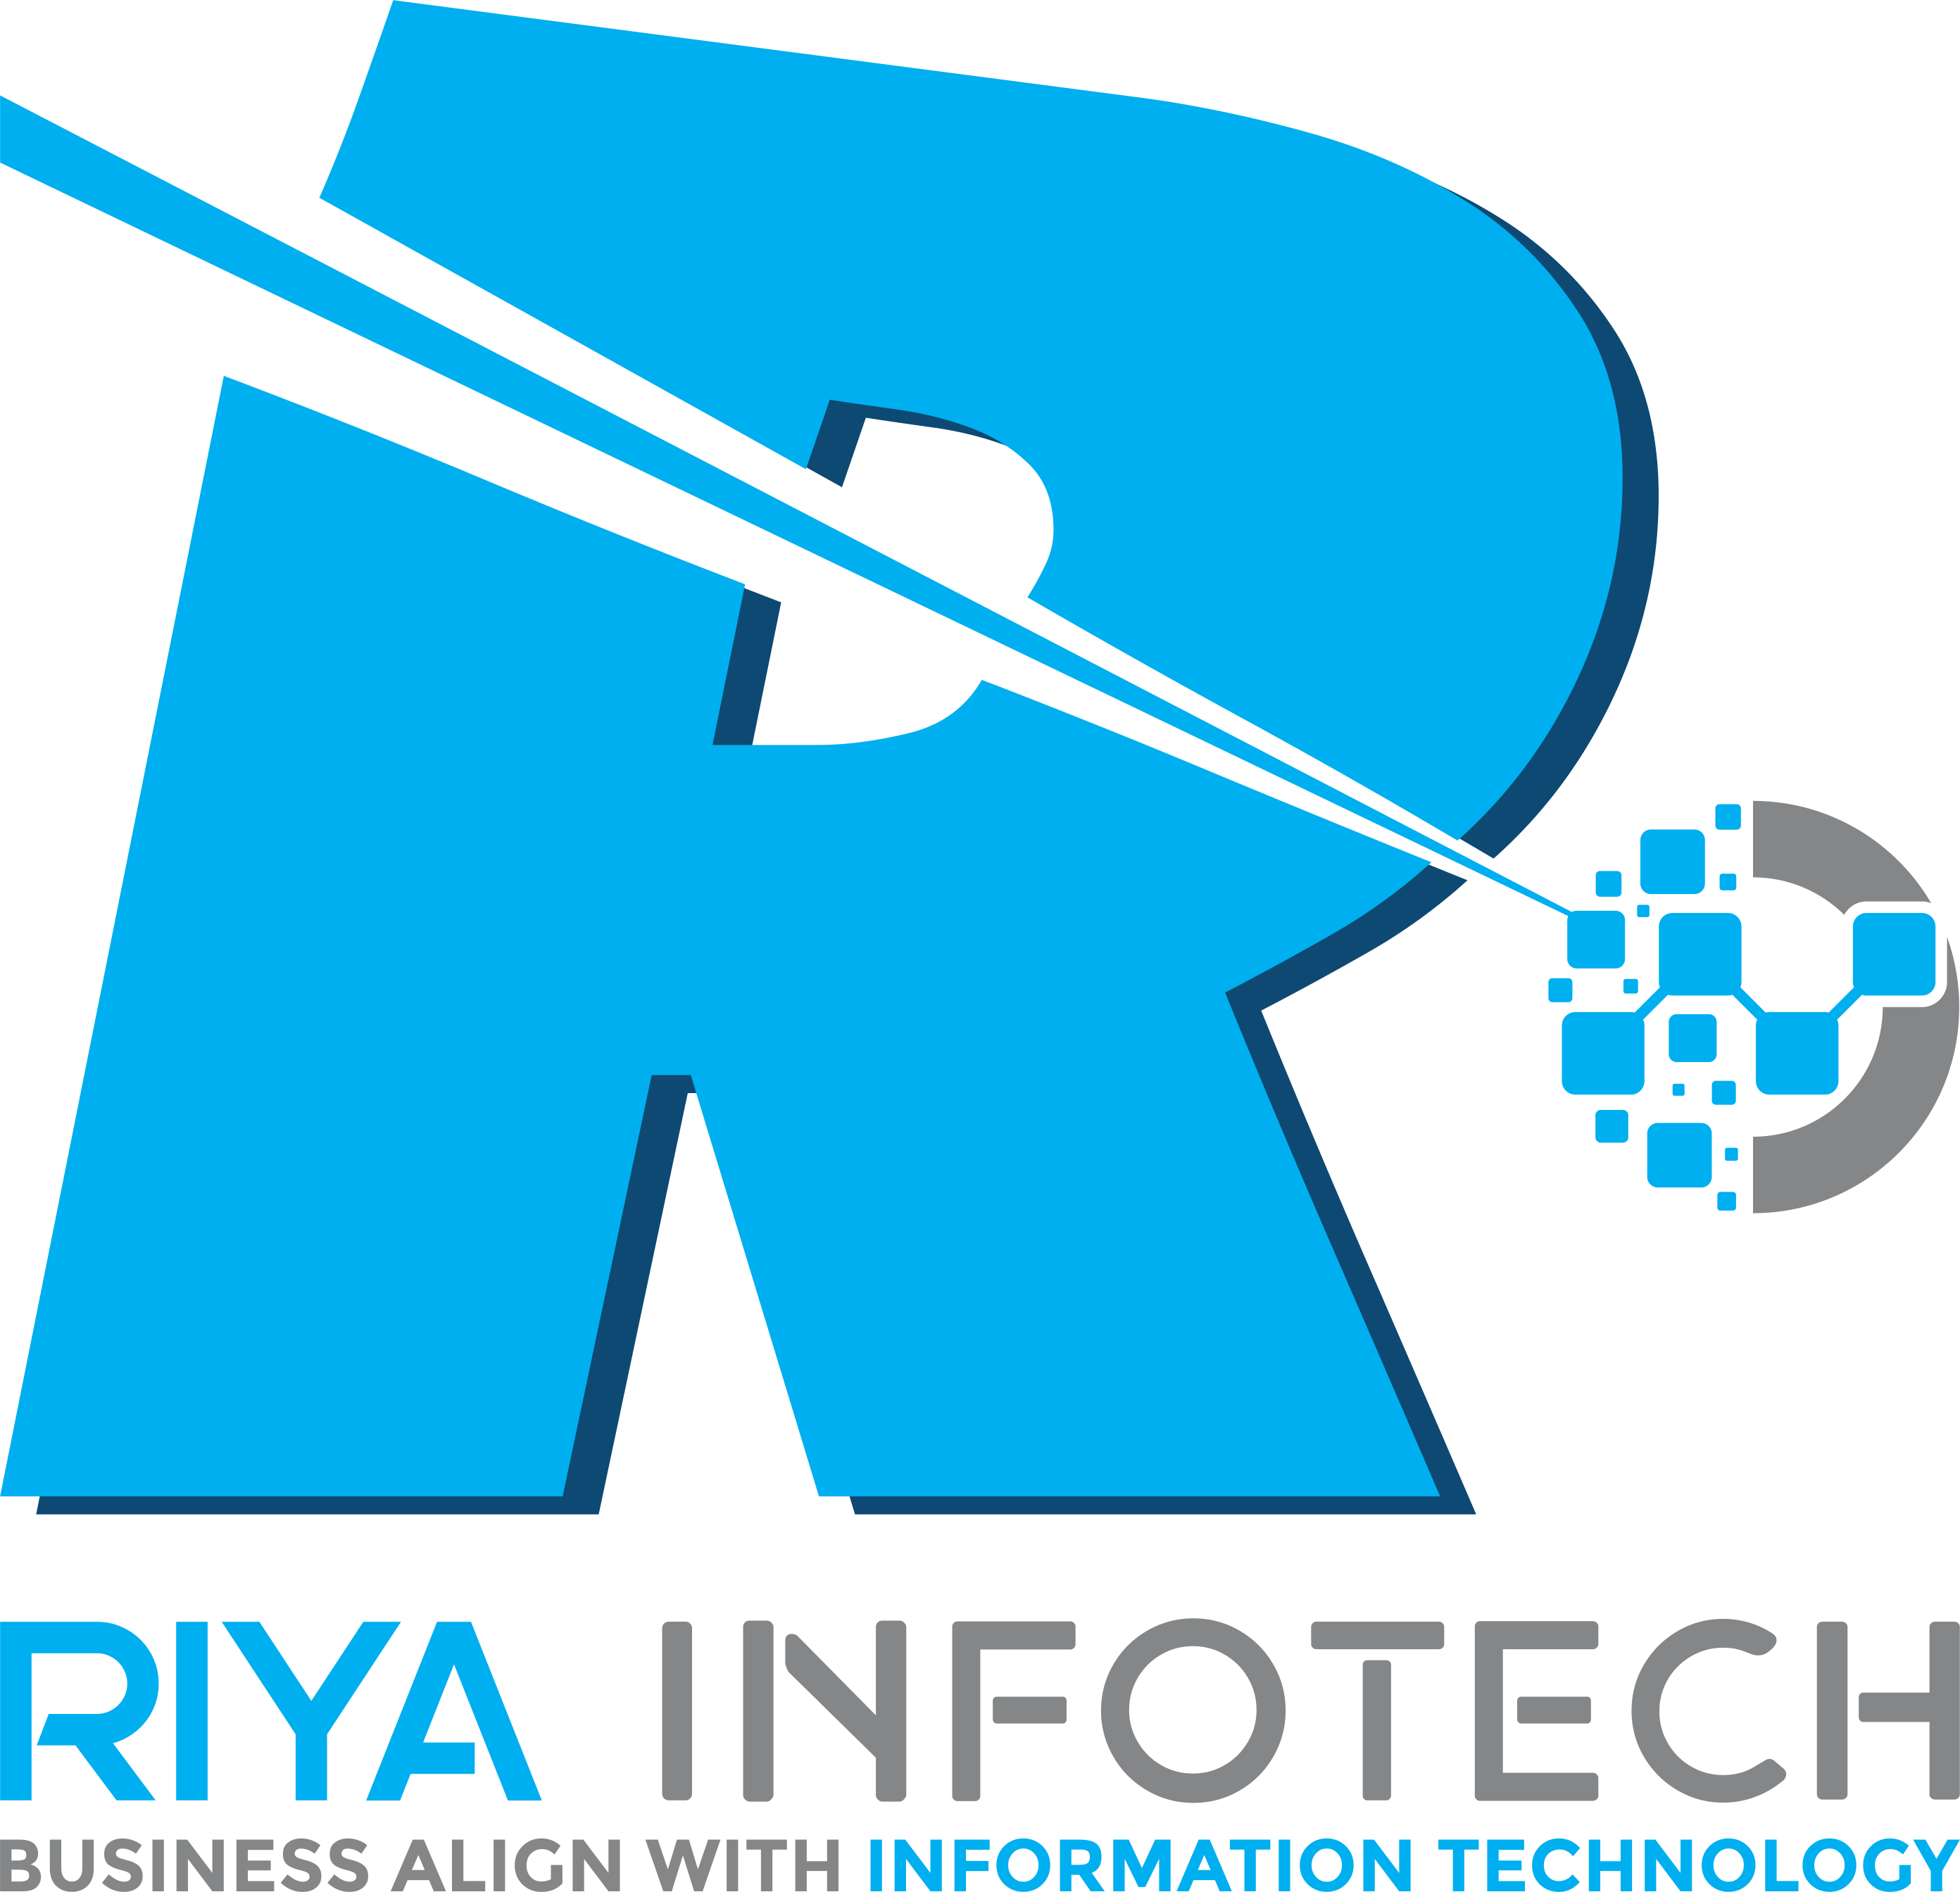 riya infotech